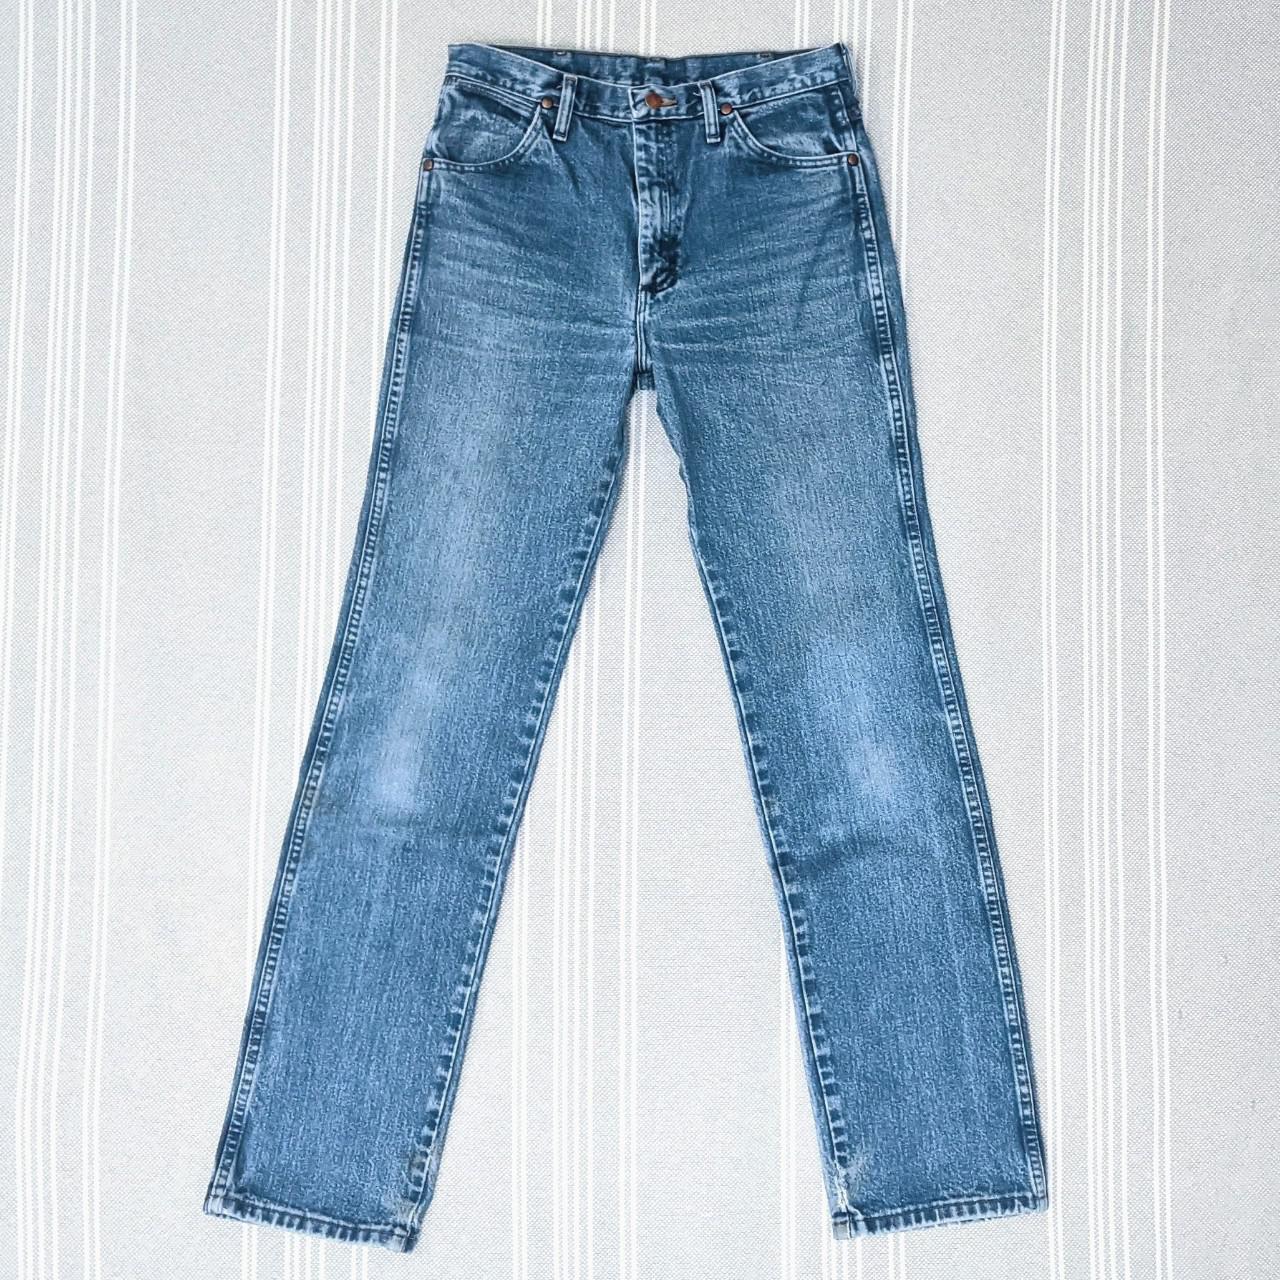 🌵 Vintage 90's Wrangler 936GBK straight leg jeans,... - Depop